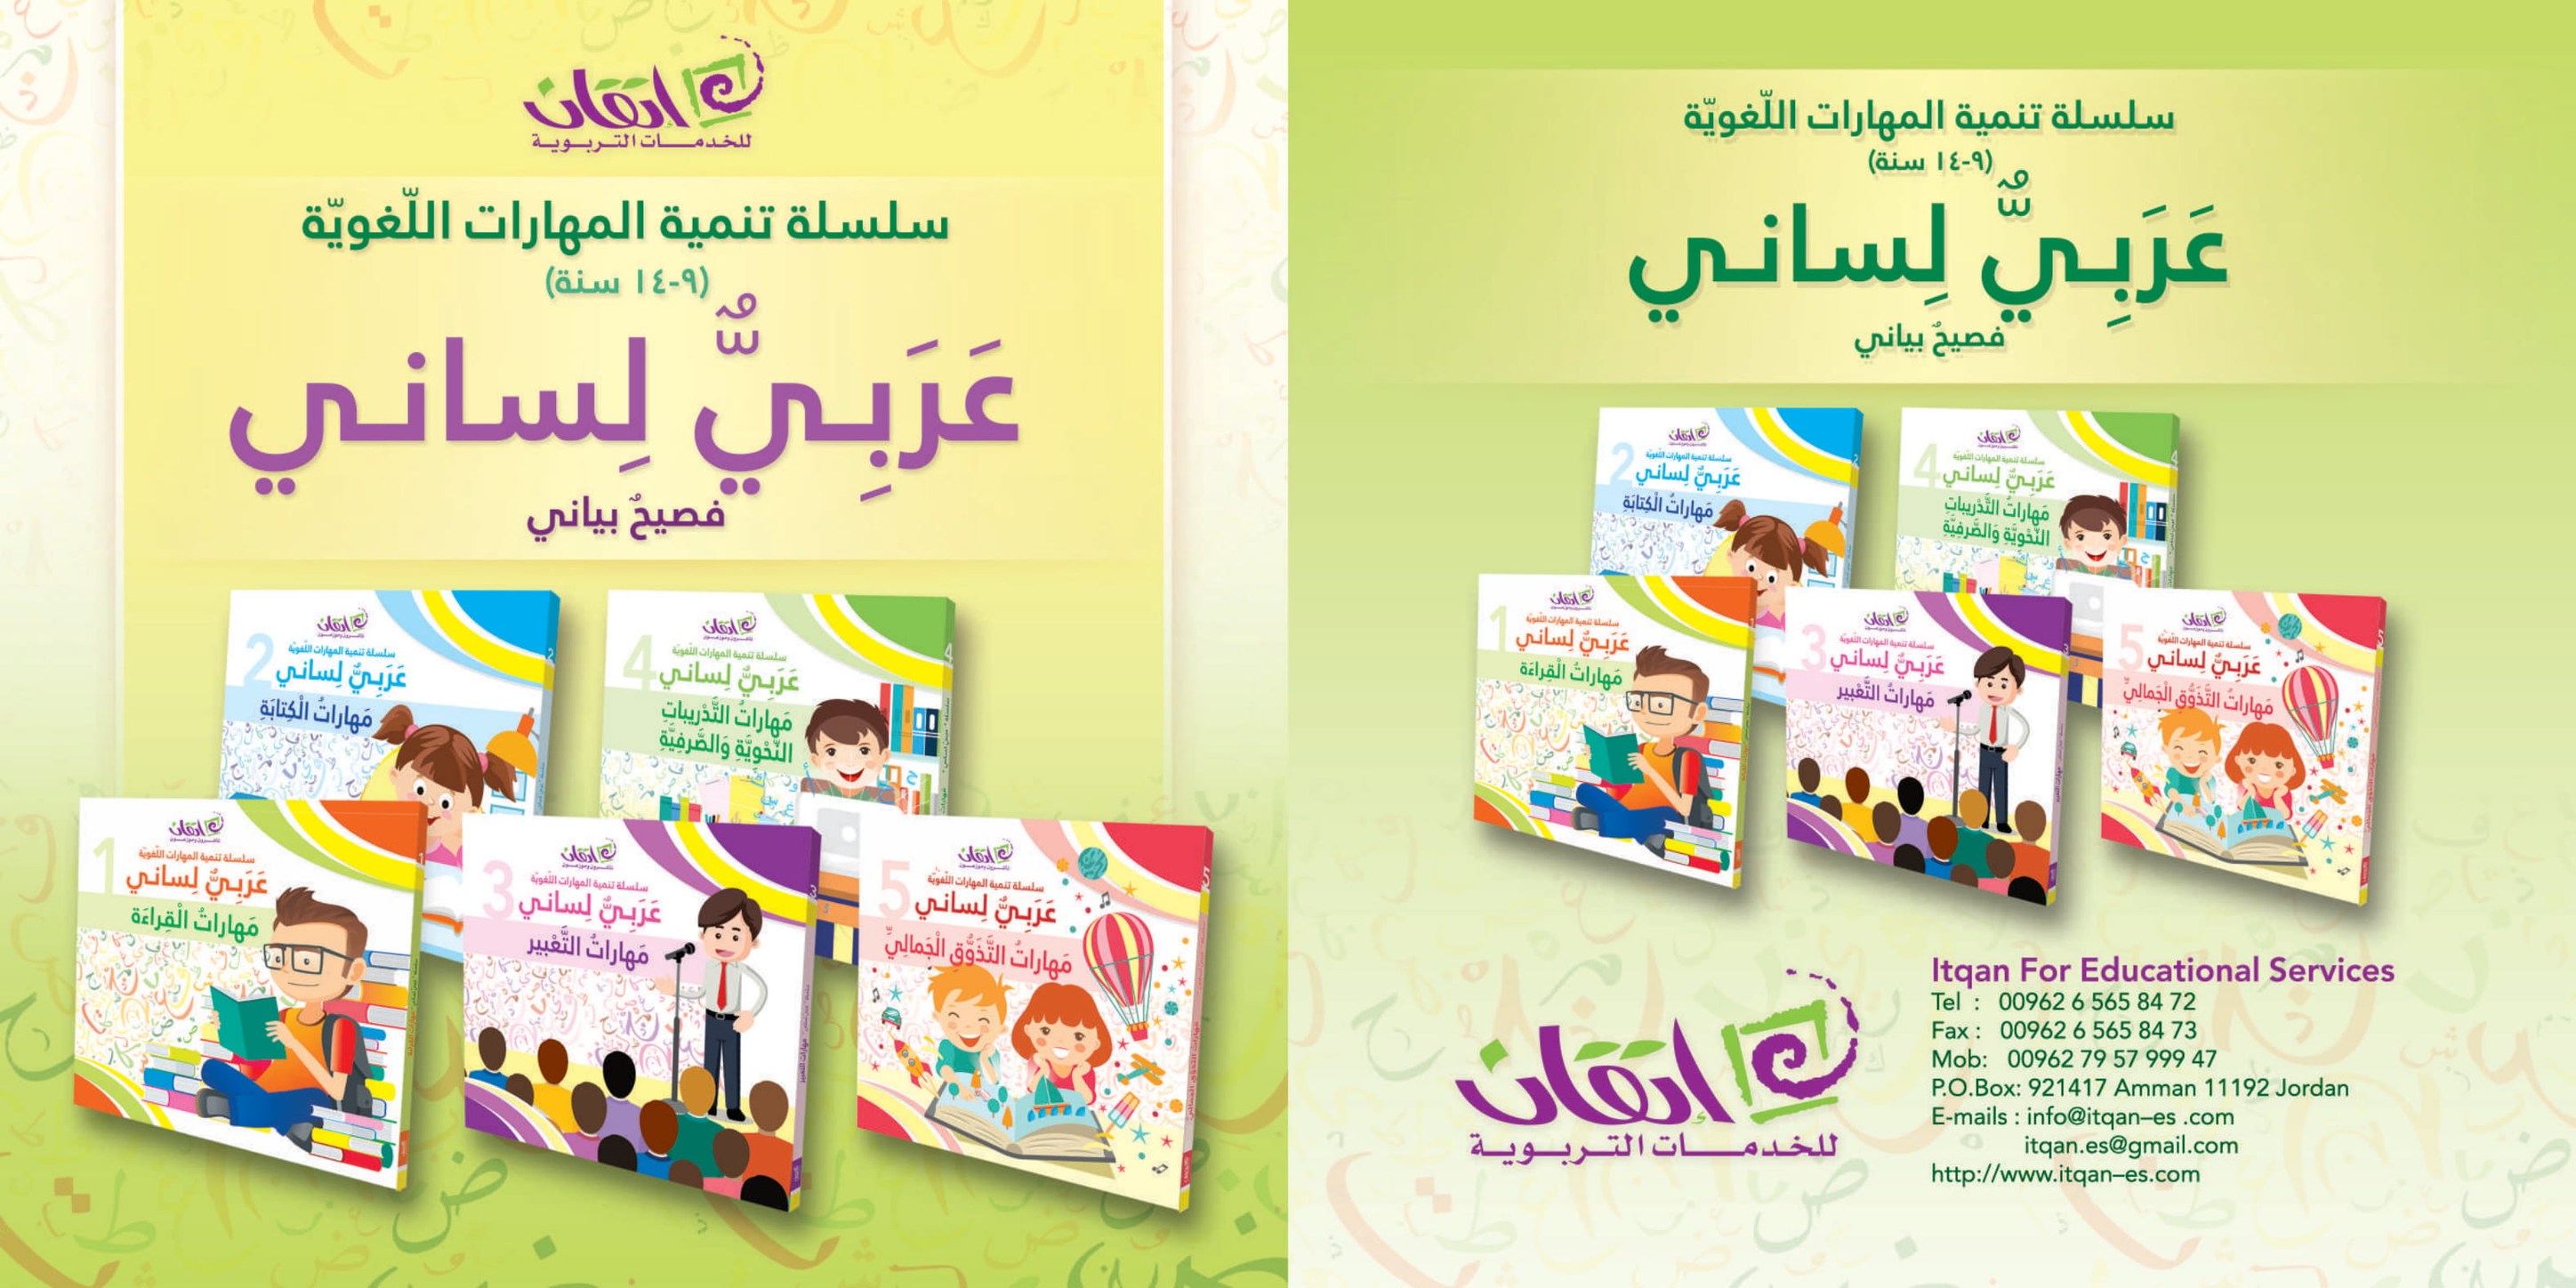 سلسلة تنمية المهارات اللغوية - عربيٌّ لساني